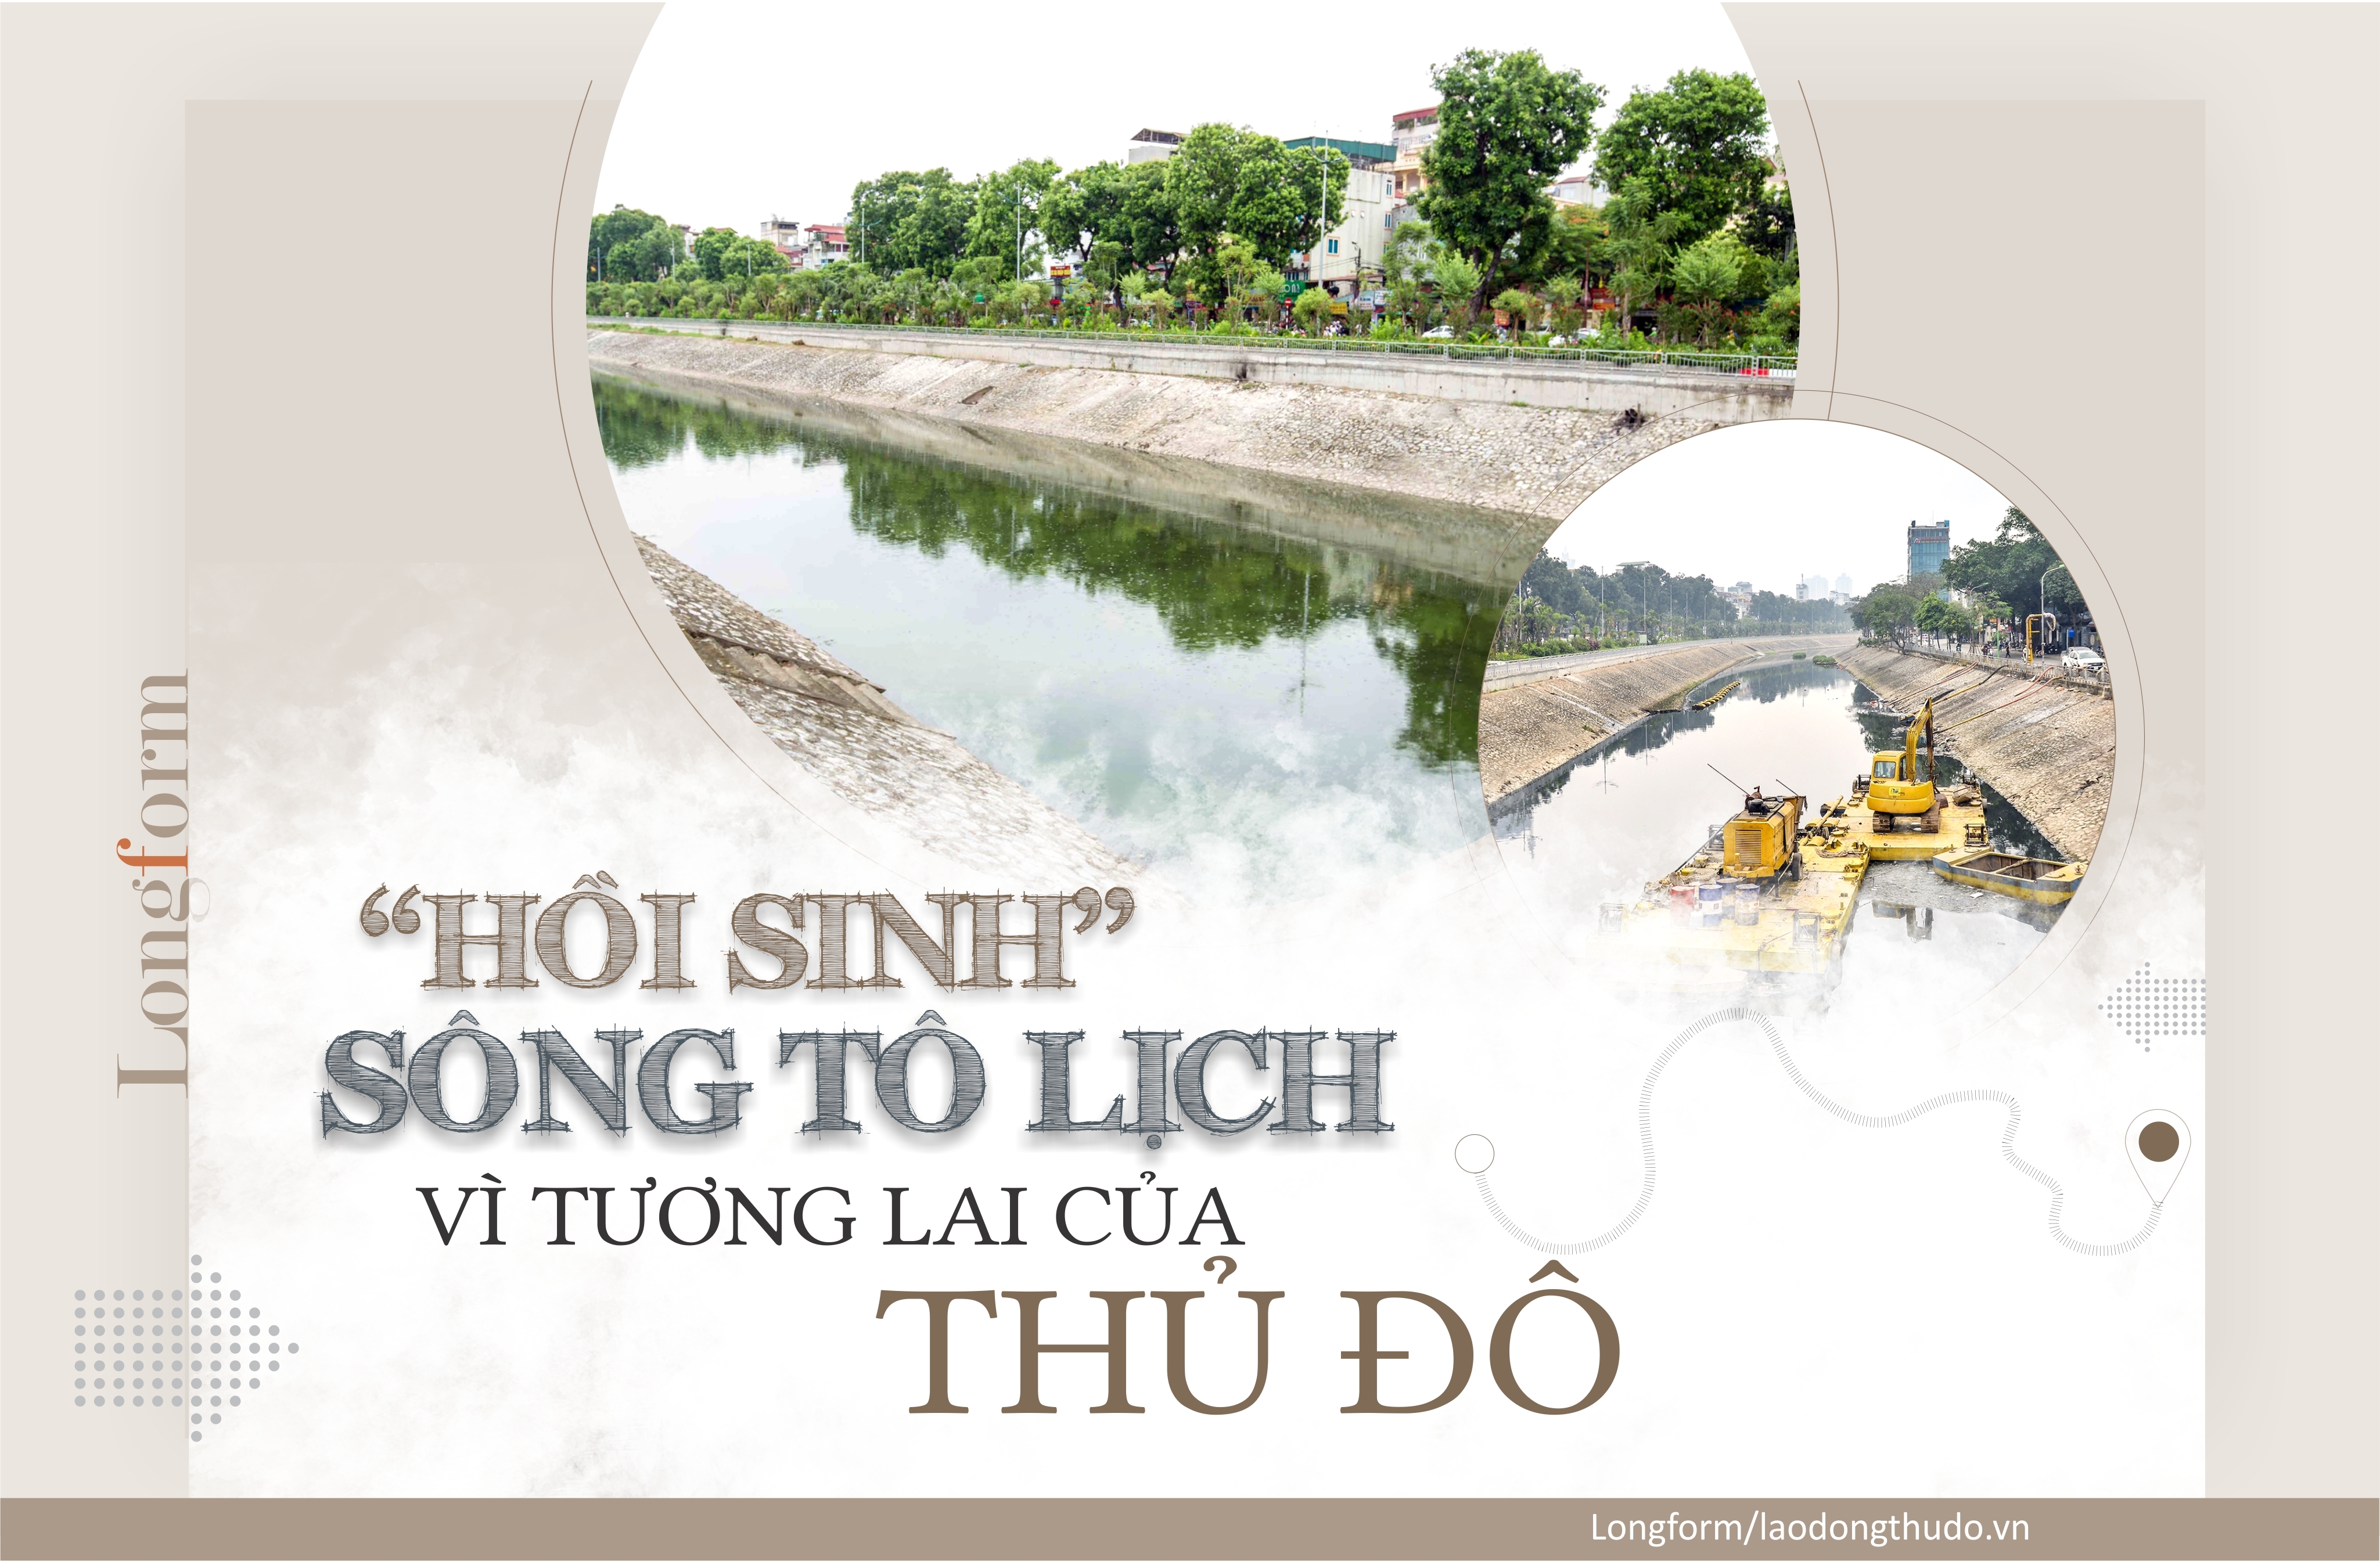 “Hồi sinh” sông Tô Lịch vì tương lai của Thủ đô